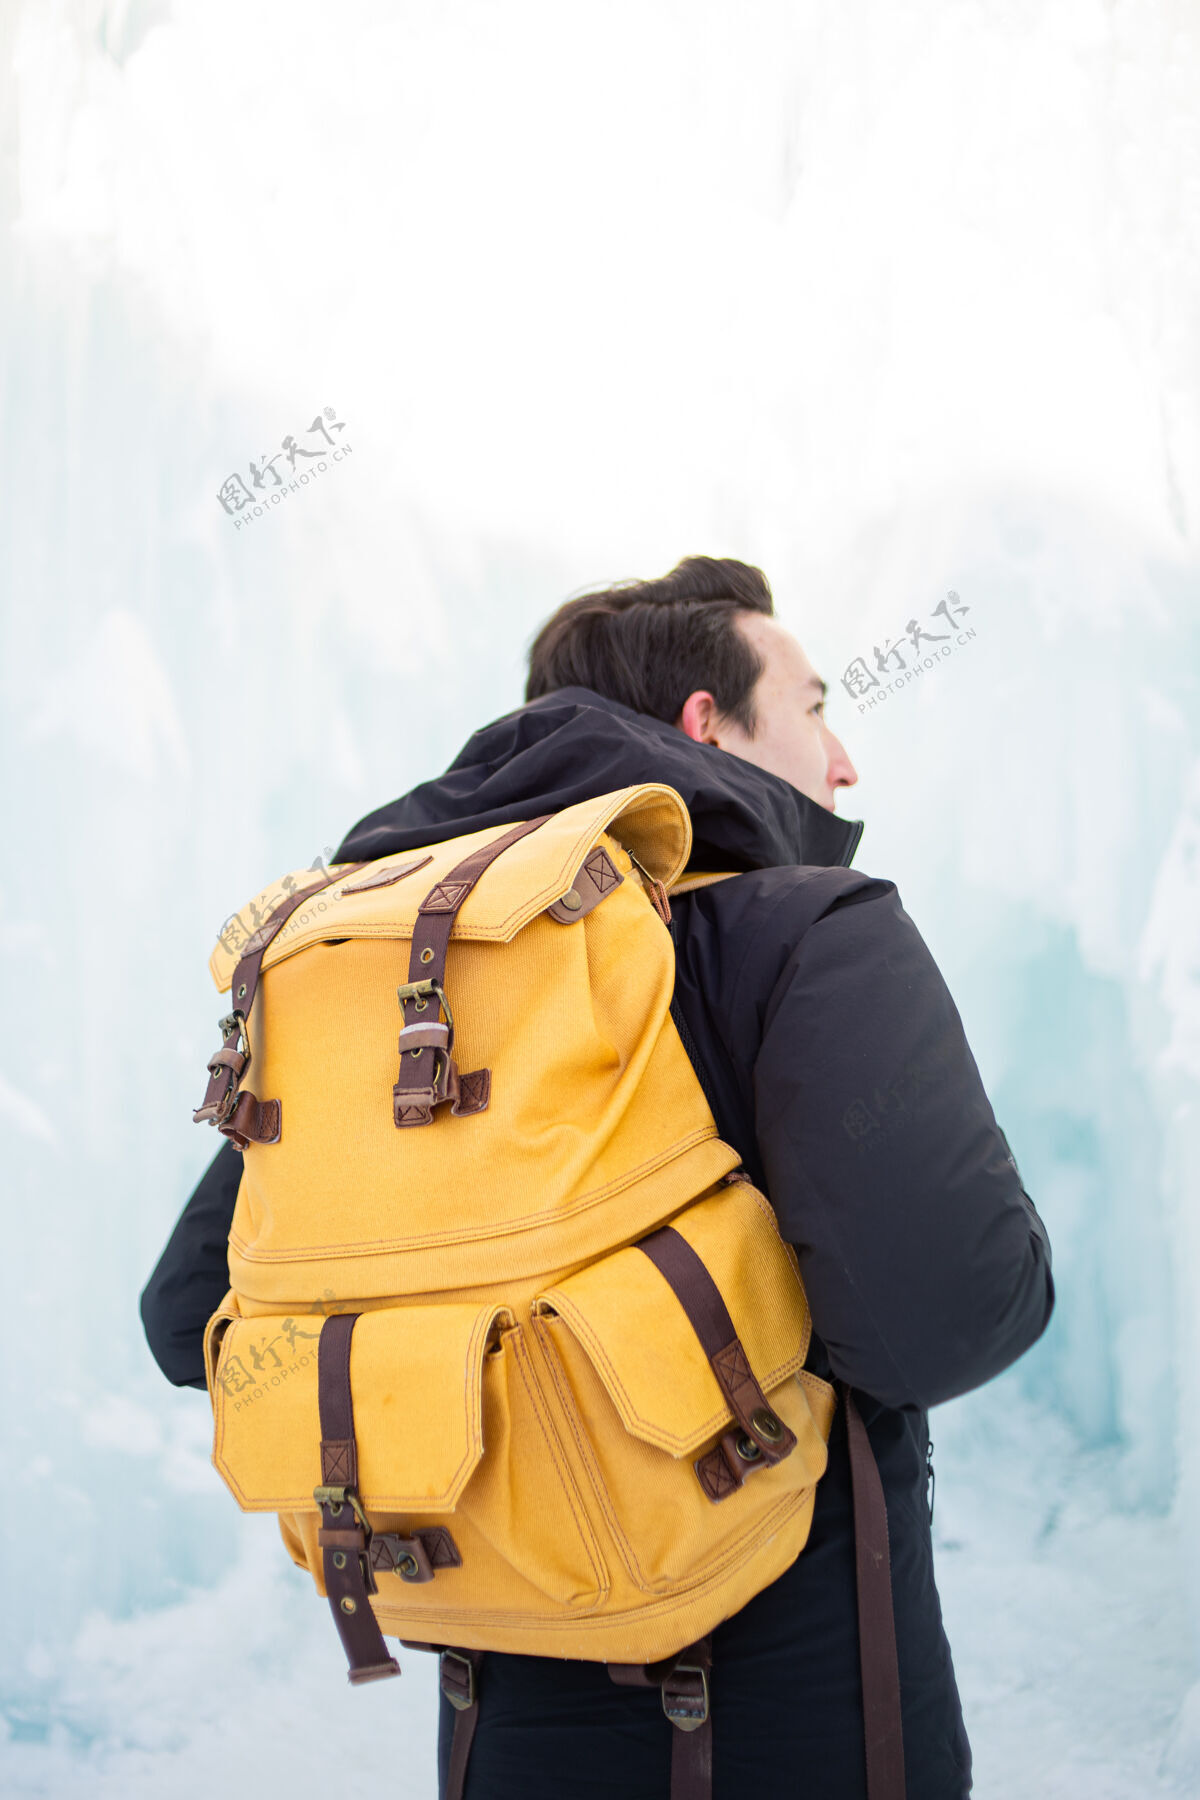 人穿黑色夹克和棕色背包的男人下雪冒险寒冷